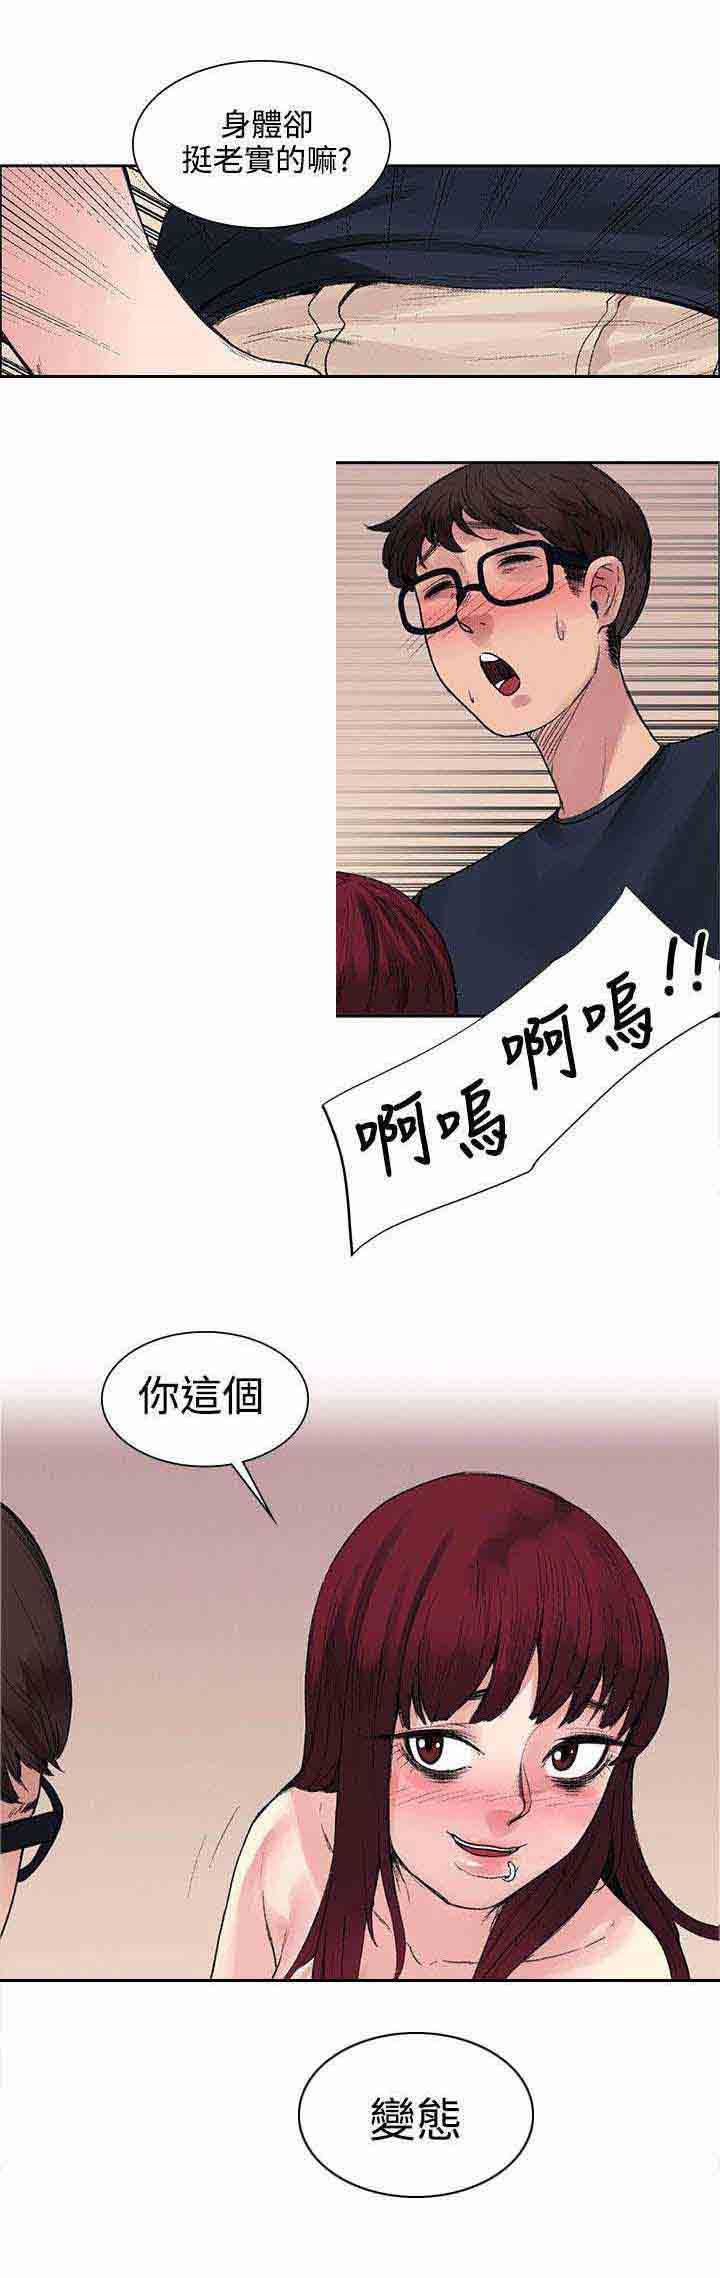 韩国污漫画 甜蜜的香氣 第18话能力又发动了 8